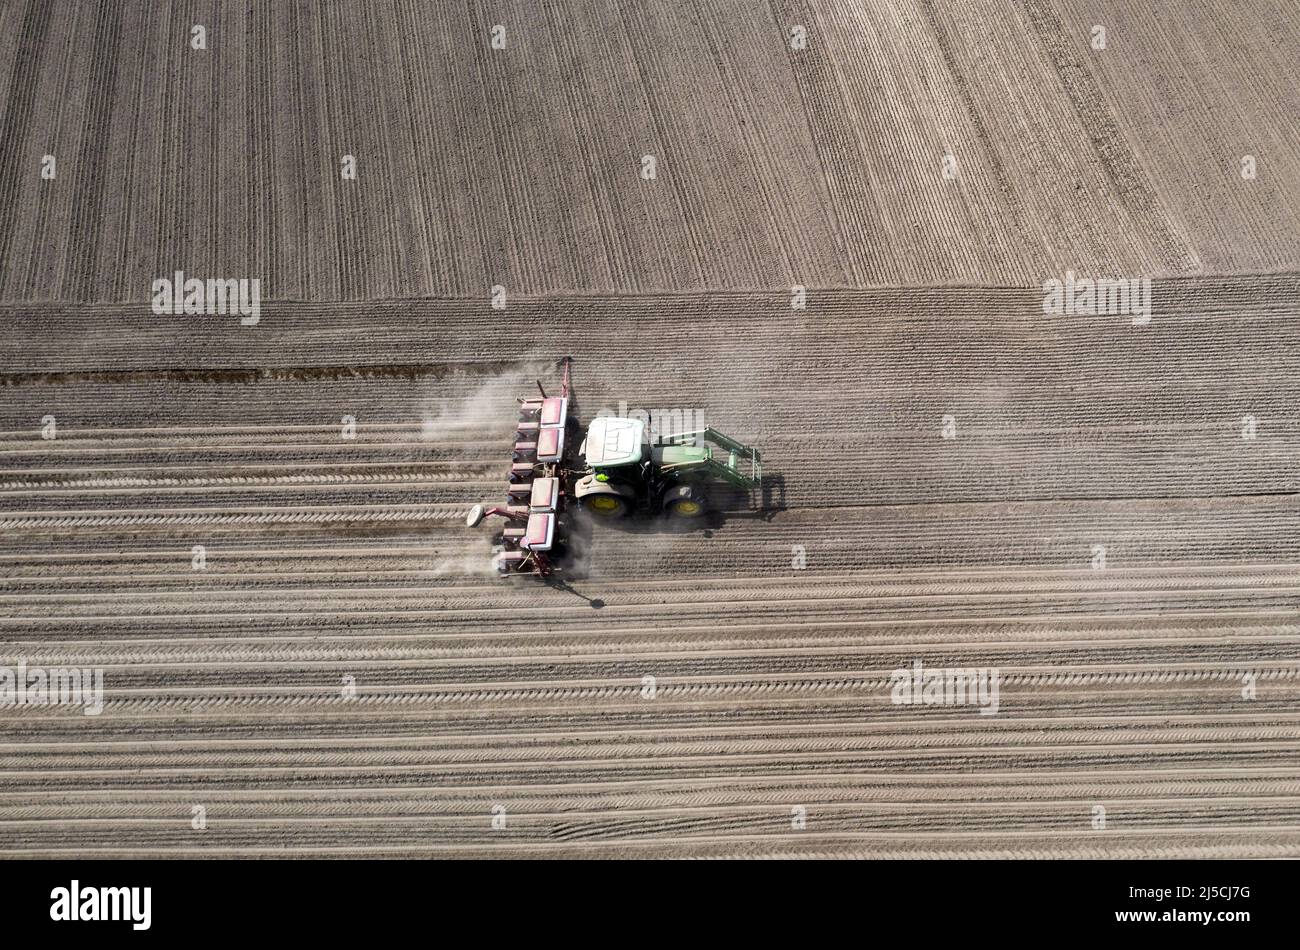 Debido a la persistente sequía, un tractor arrastra una gran cantidad de polvo detrás de él mientras siembra maíz. [traducción automática] Foto de stock